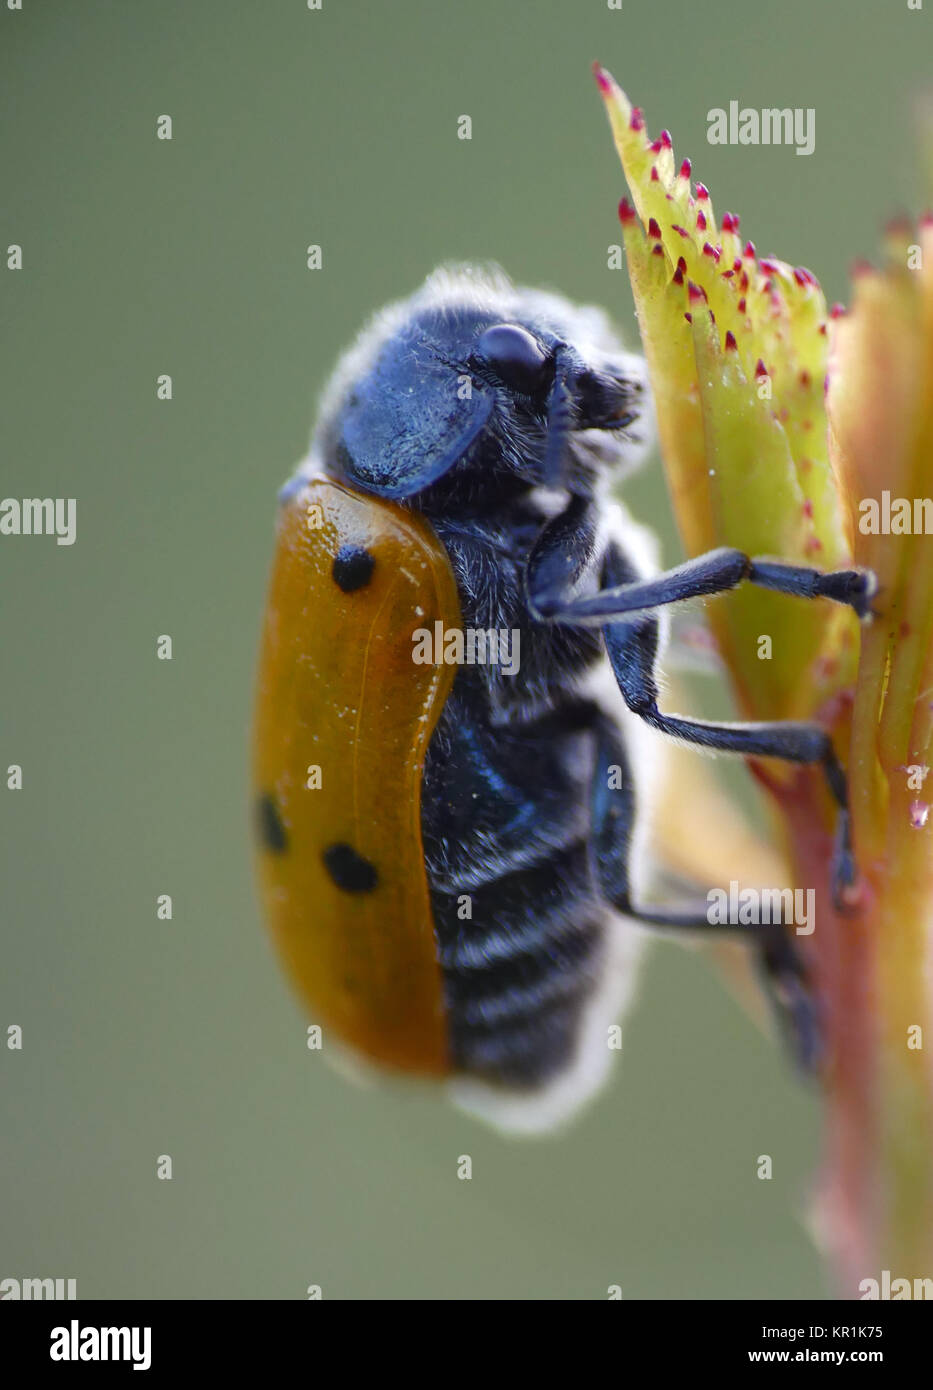 Lachnaia italica, Coleoptera souvent confondu avec les coccinelles. Banque D'Images